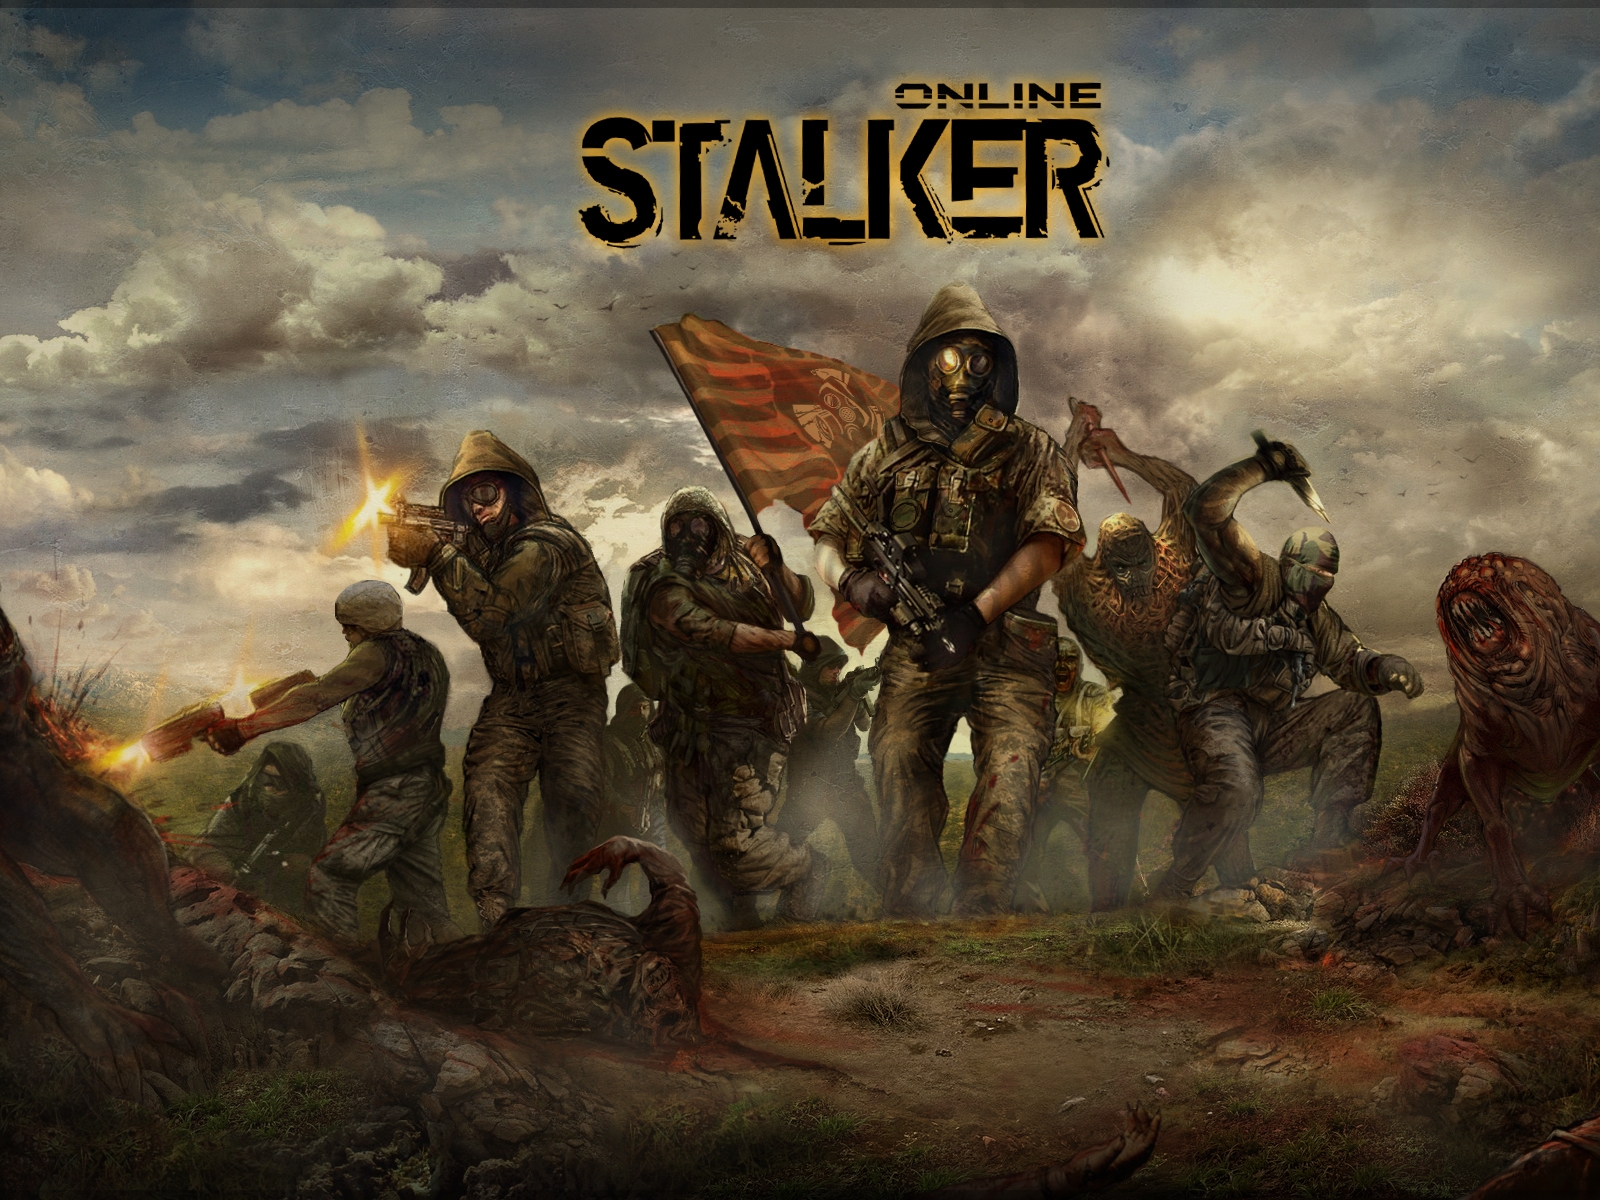 Stalker Game for 1600 x 1200 resolution